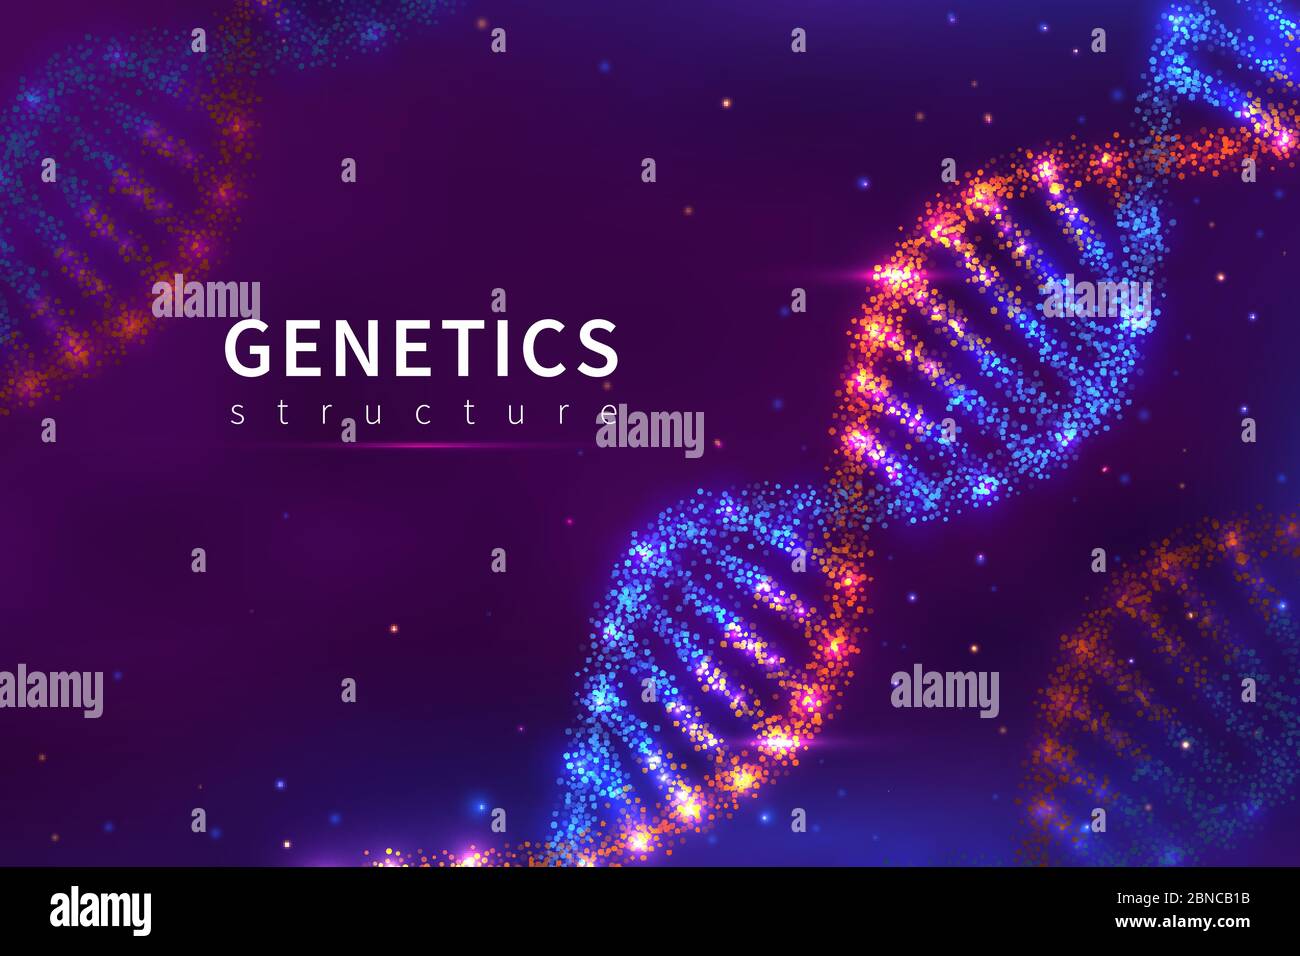 DNA di fondo. Struttura genetica, tecnologia biologica. poster vettoriale del modello di dna genoma umano 3d. Illustrazione dell'elica molecolare della struttura, dna genetico Illustrazione Vettoriale